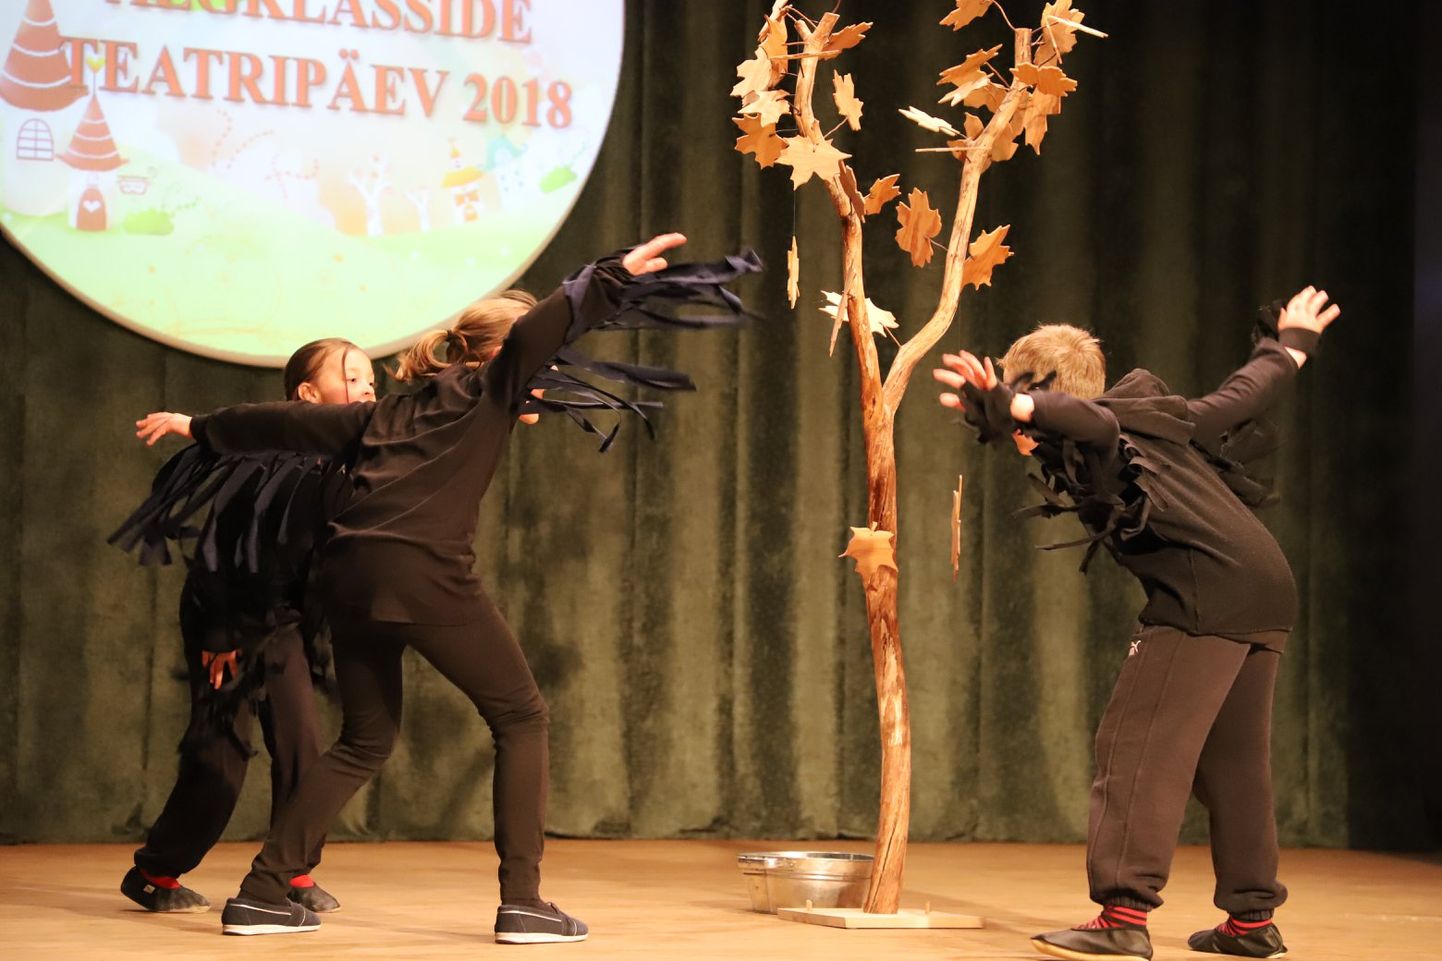 Türi põhikooli algklasside näitering esitamas "Lobiseja vanaeite" algklasside teatripäeval Koerus